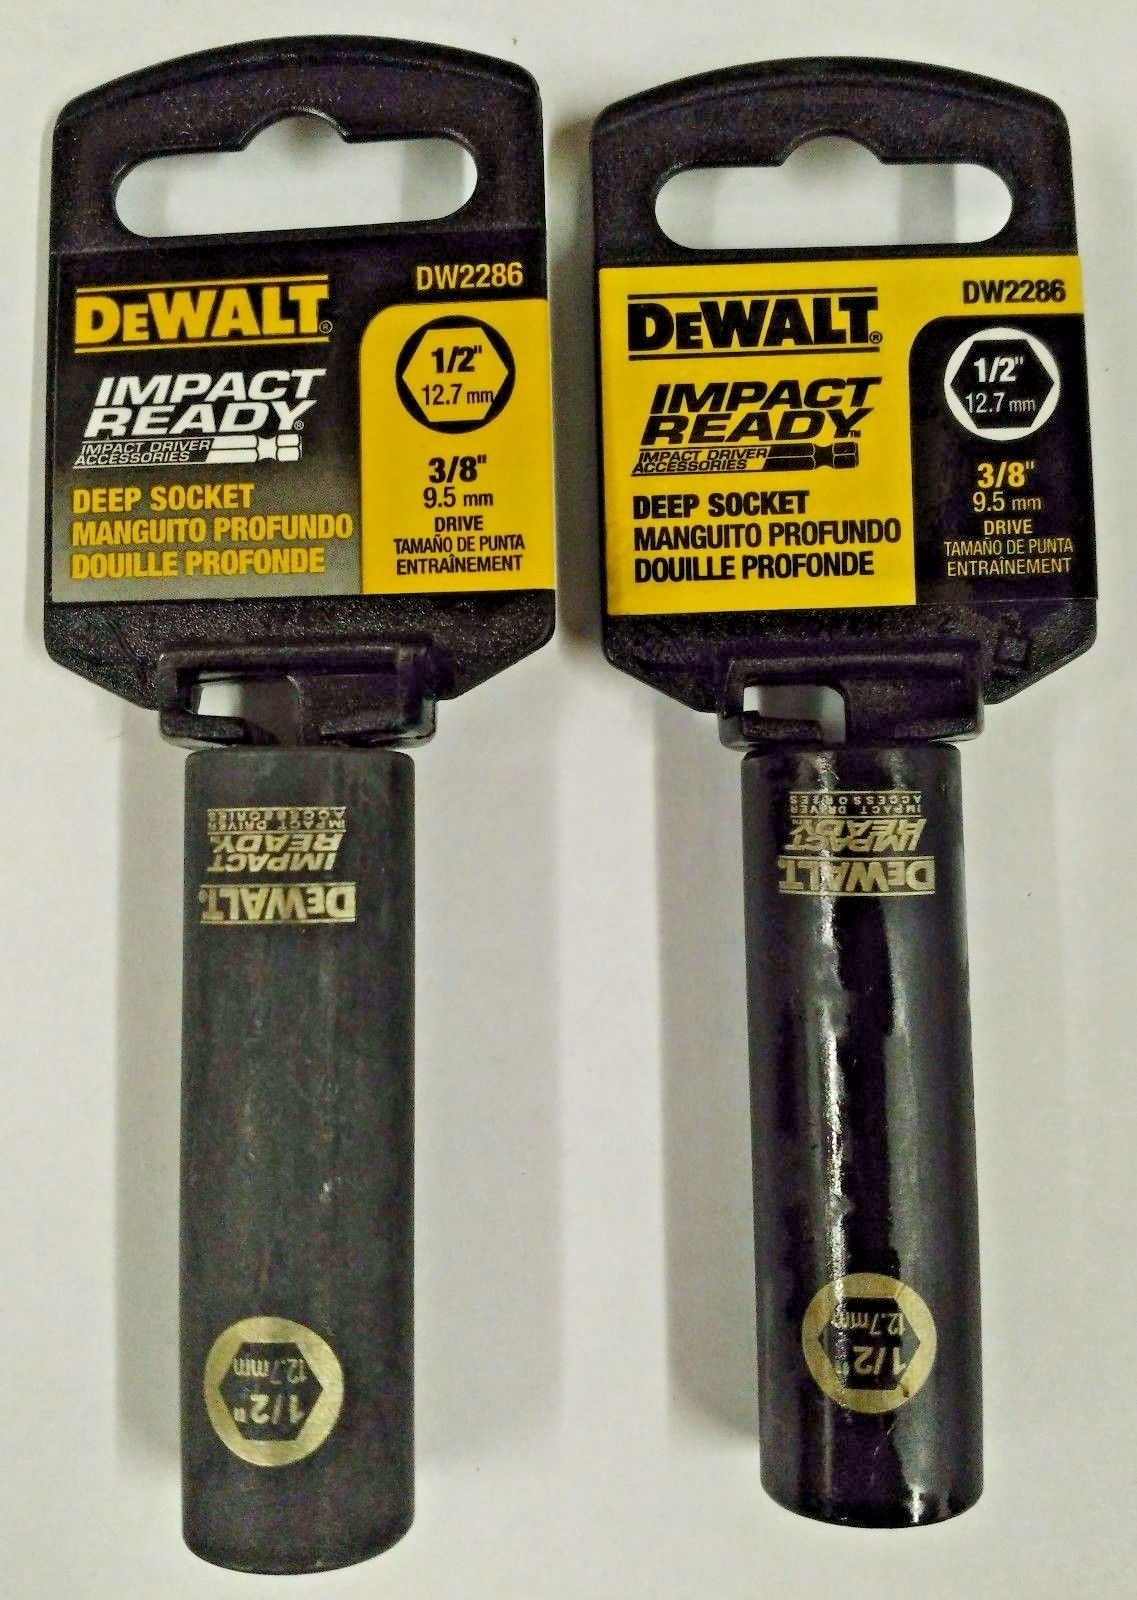 Dewalt DW2286 1/2" 3/8" Drive 6 Point Impact Ready Deep Socket 2PCS